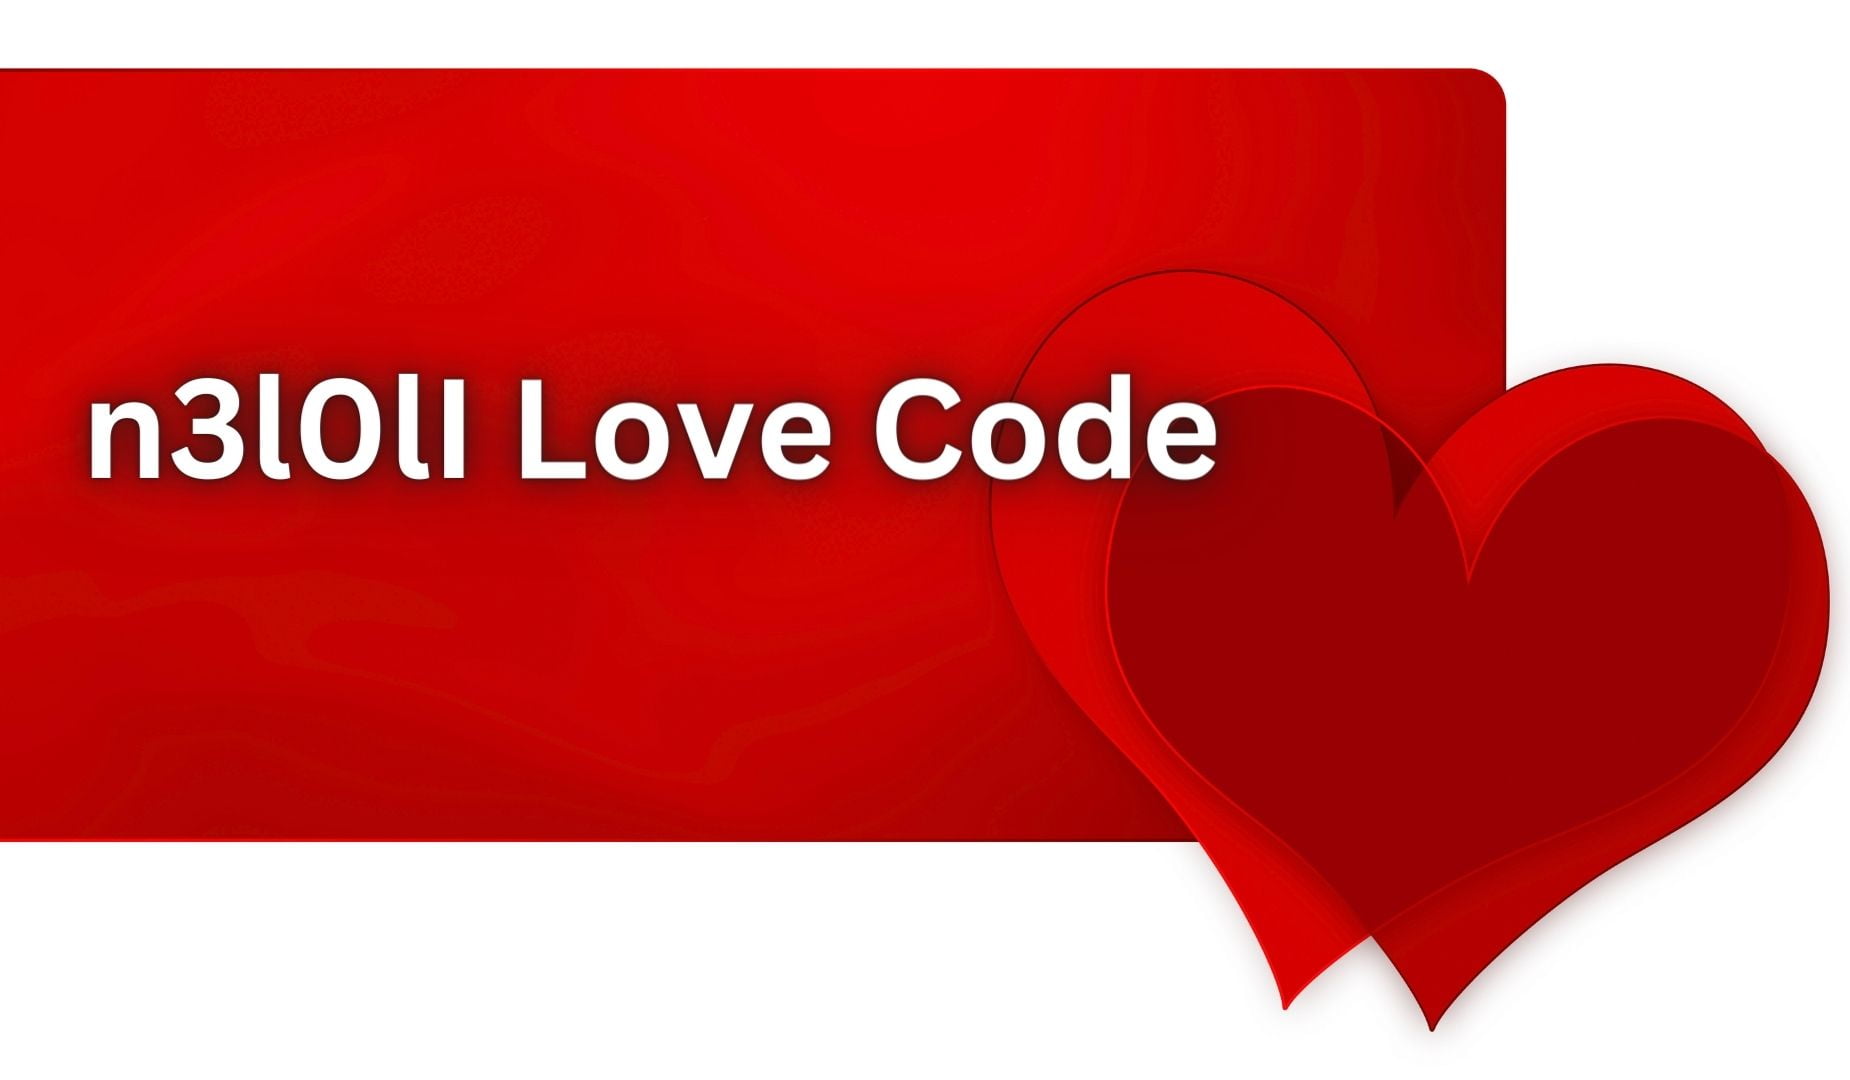 Люблю тебя на математическом языке. I Love code. Код i Love you в цифрах. I Love you to code.